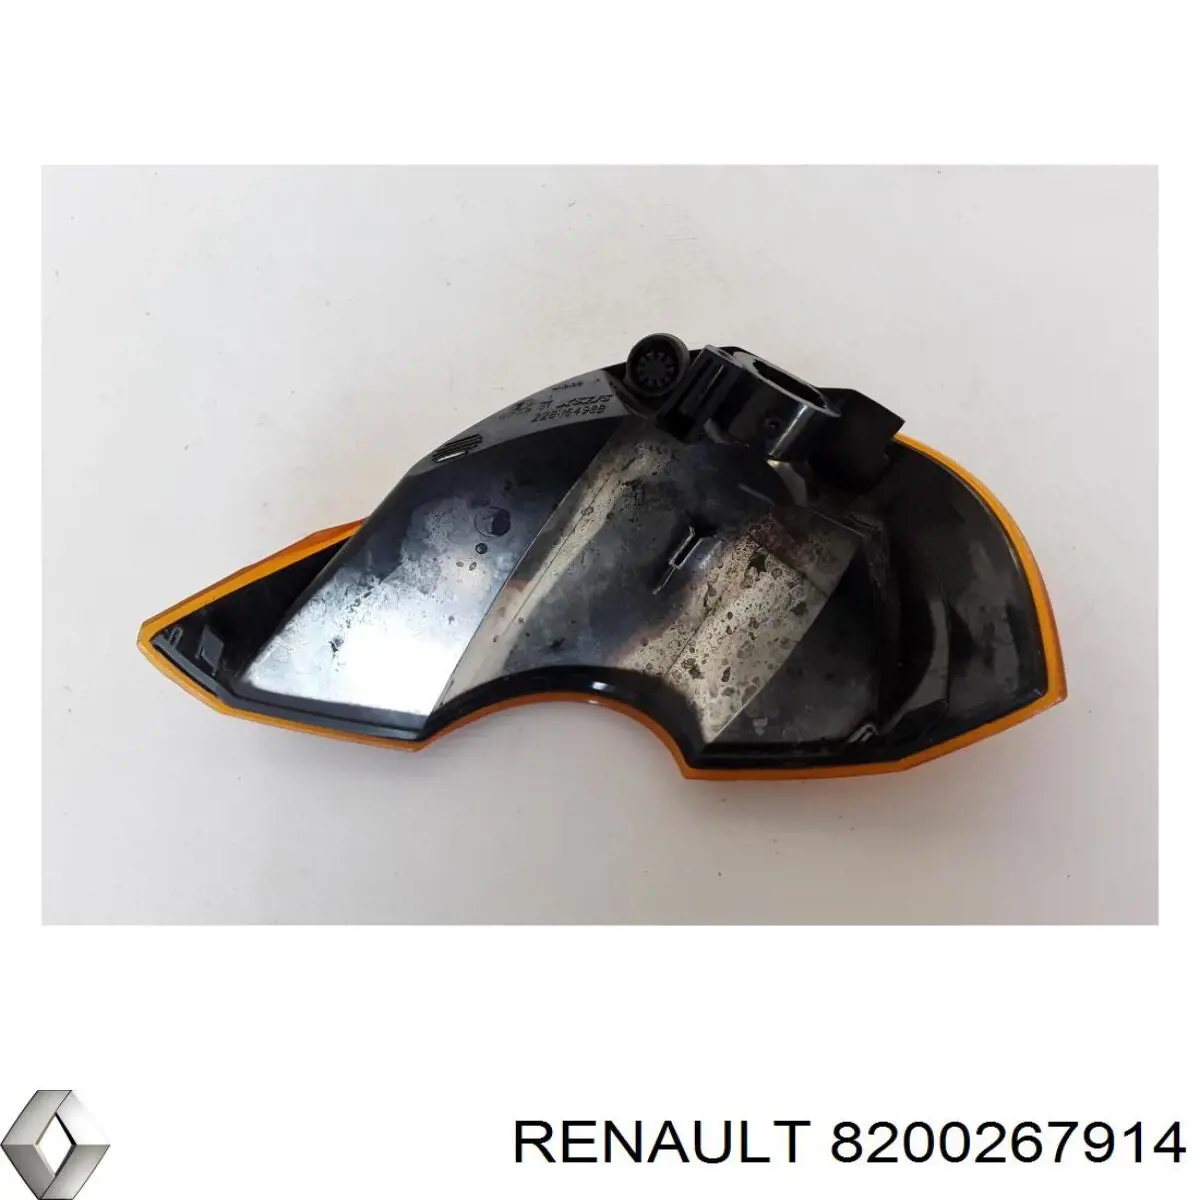 Intermitente derecho Renault Modus JP0